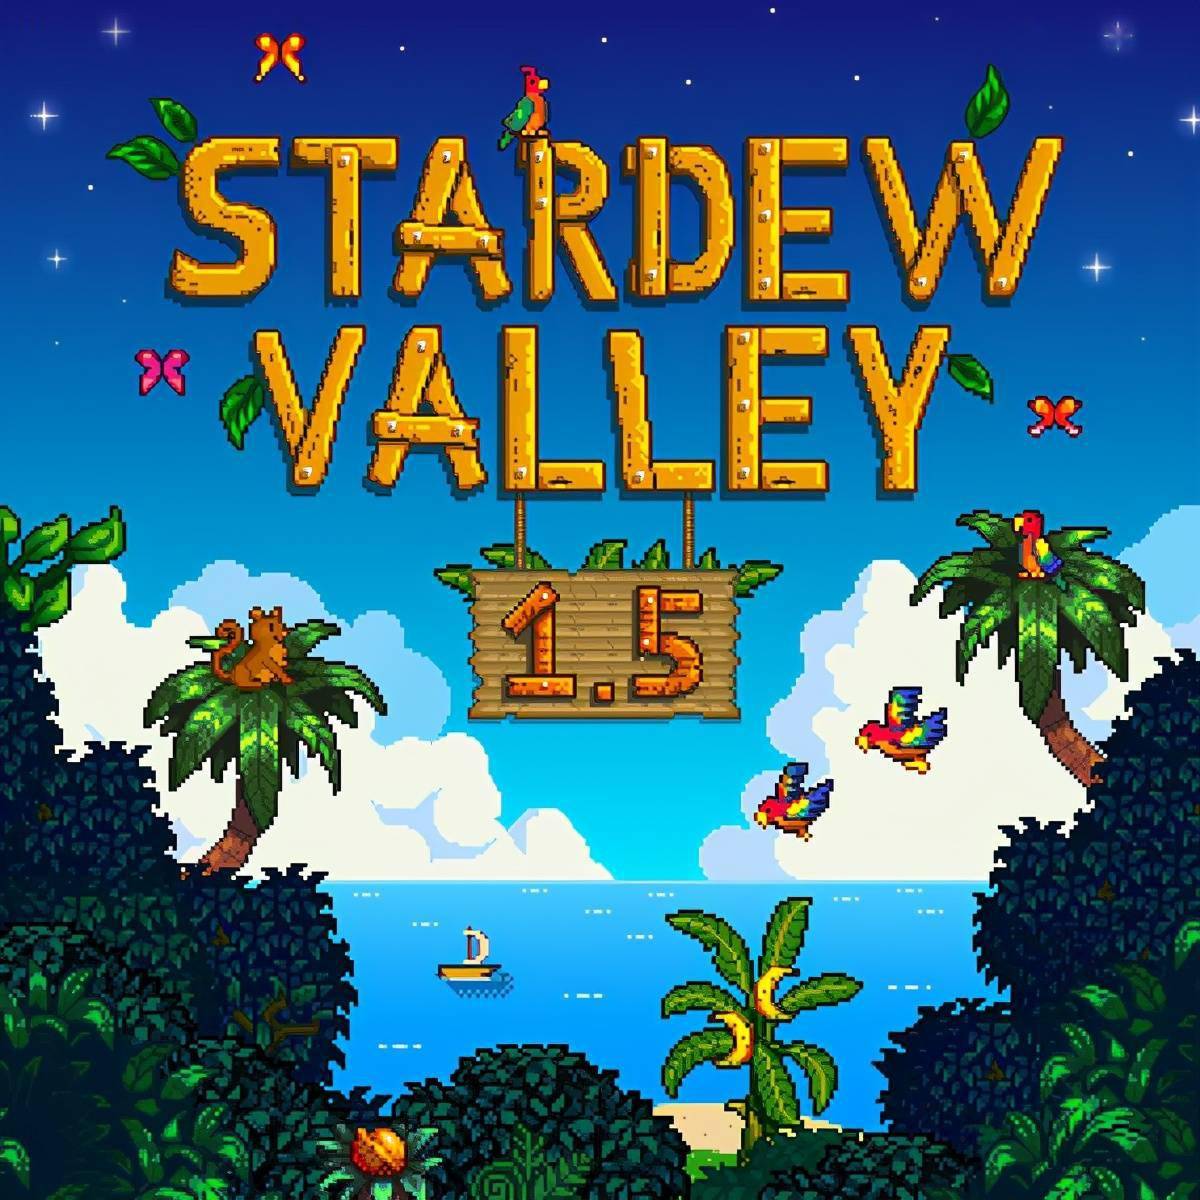 星露谷物语 主机版1 5版本更新上线开荒海岛农场 玩家